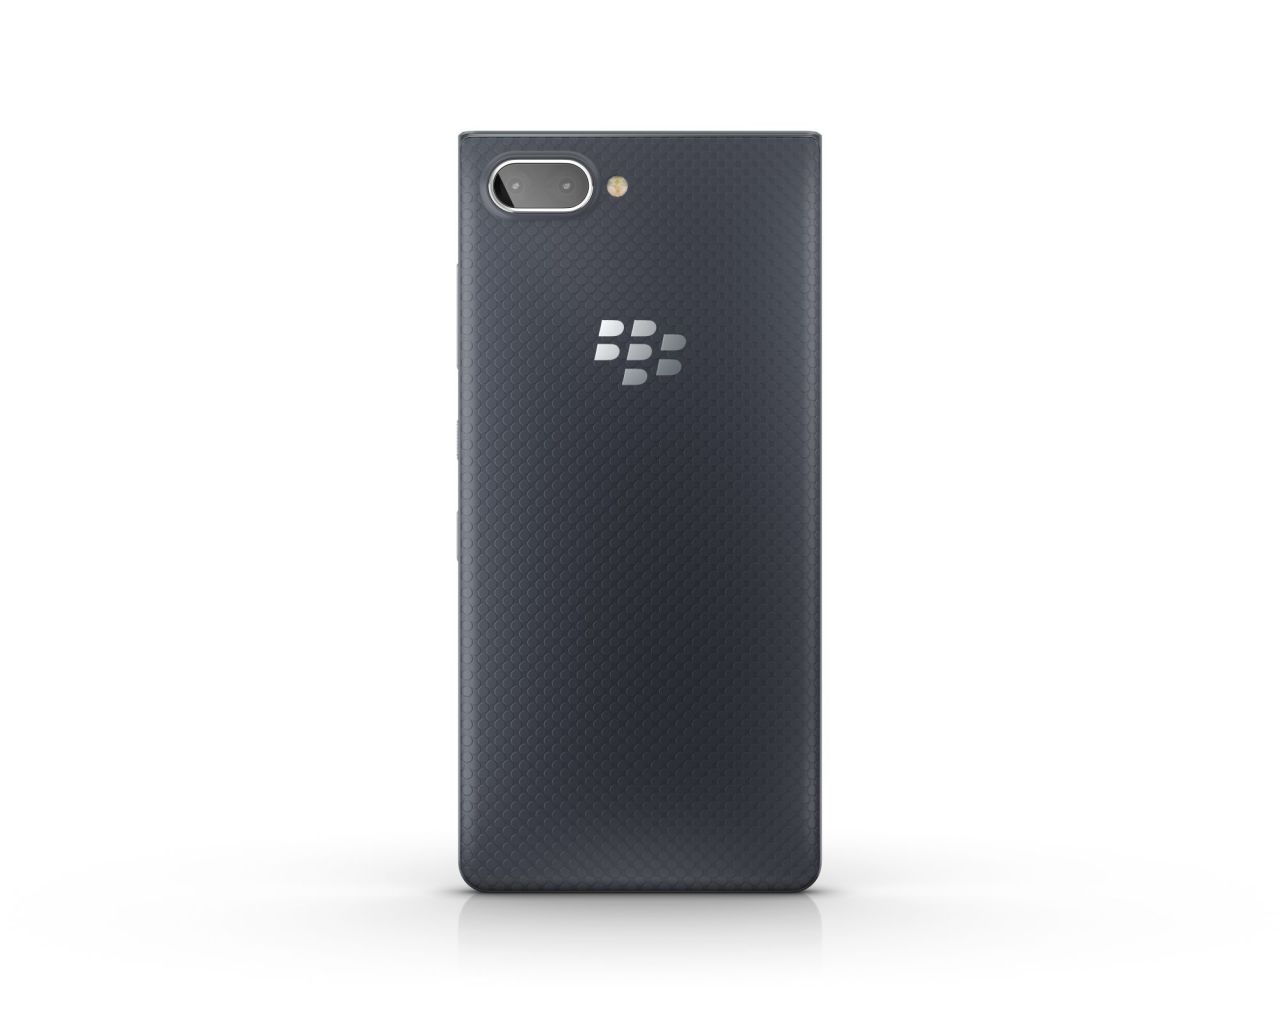 BlackBerry KEY2 LE color Slate